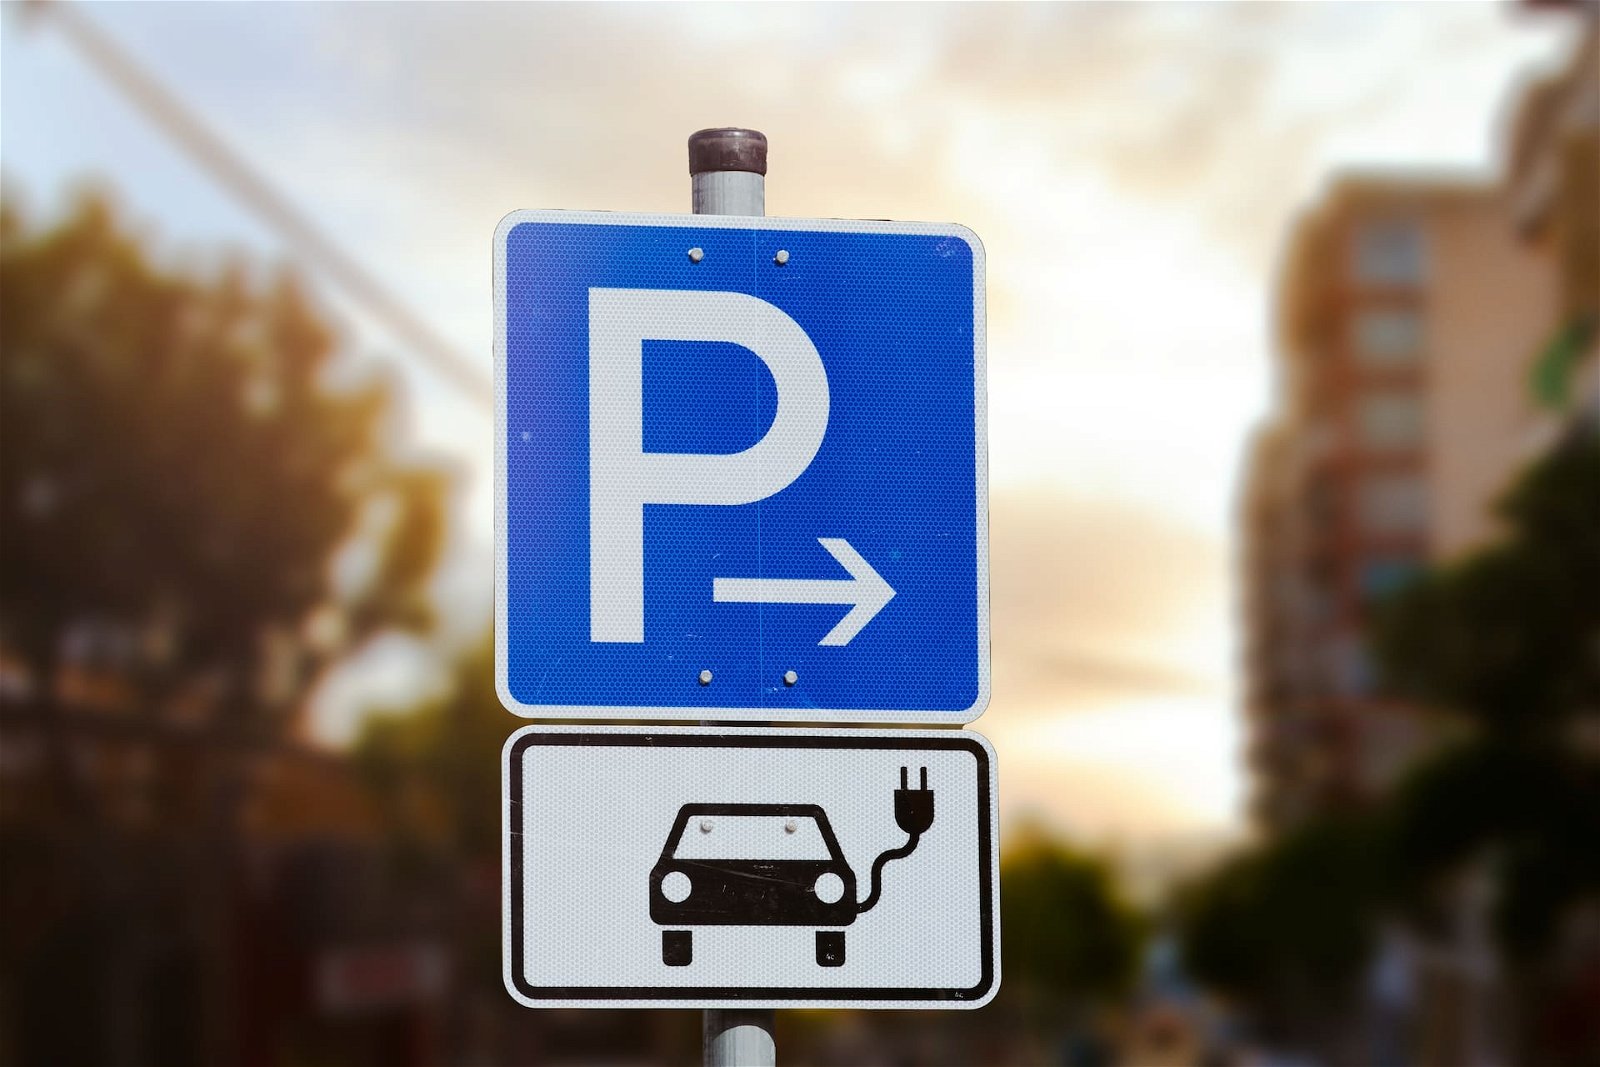 Elektroauto-Parkplatz: Verbrenner-Pkw dürfen abgeschleppt werden